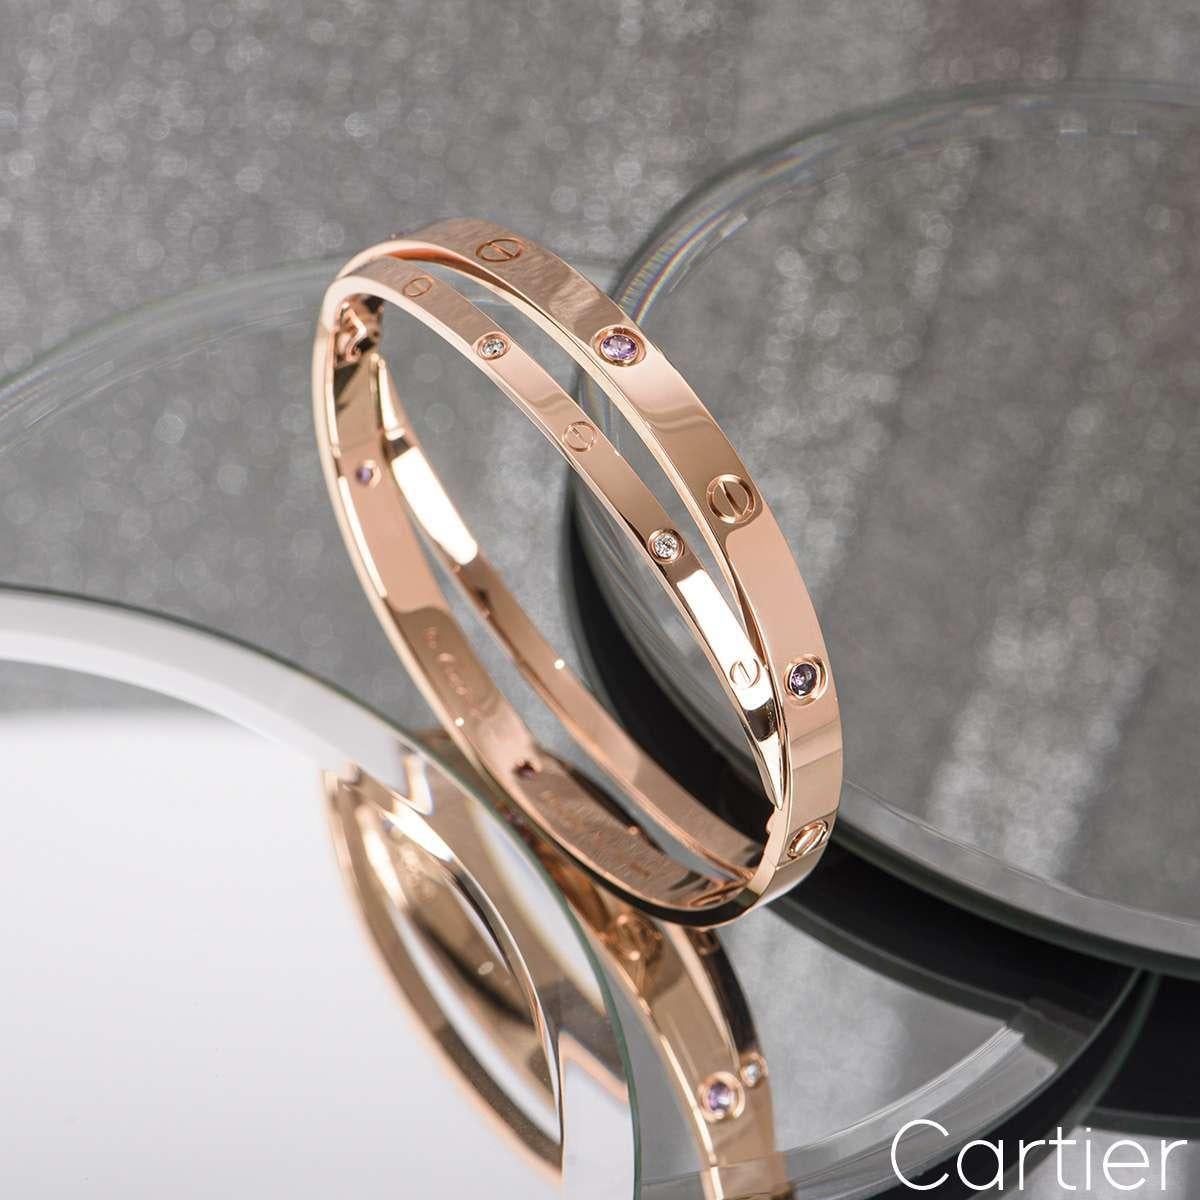 double cartier love bracelet